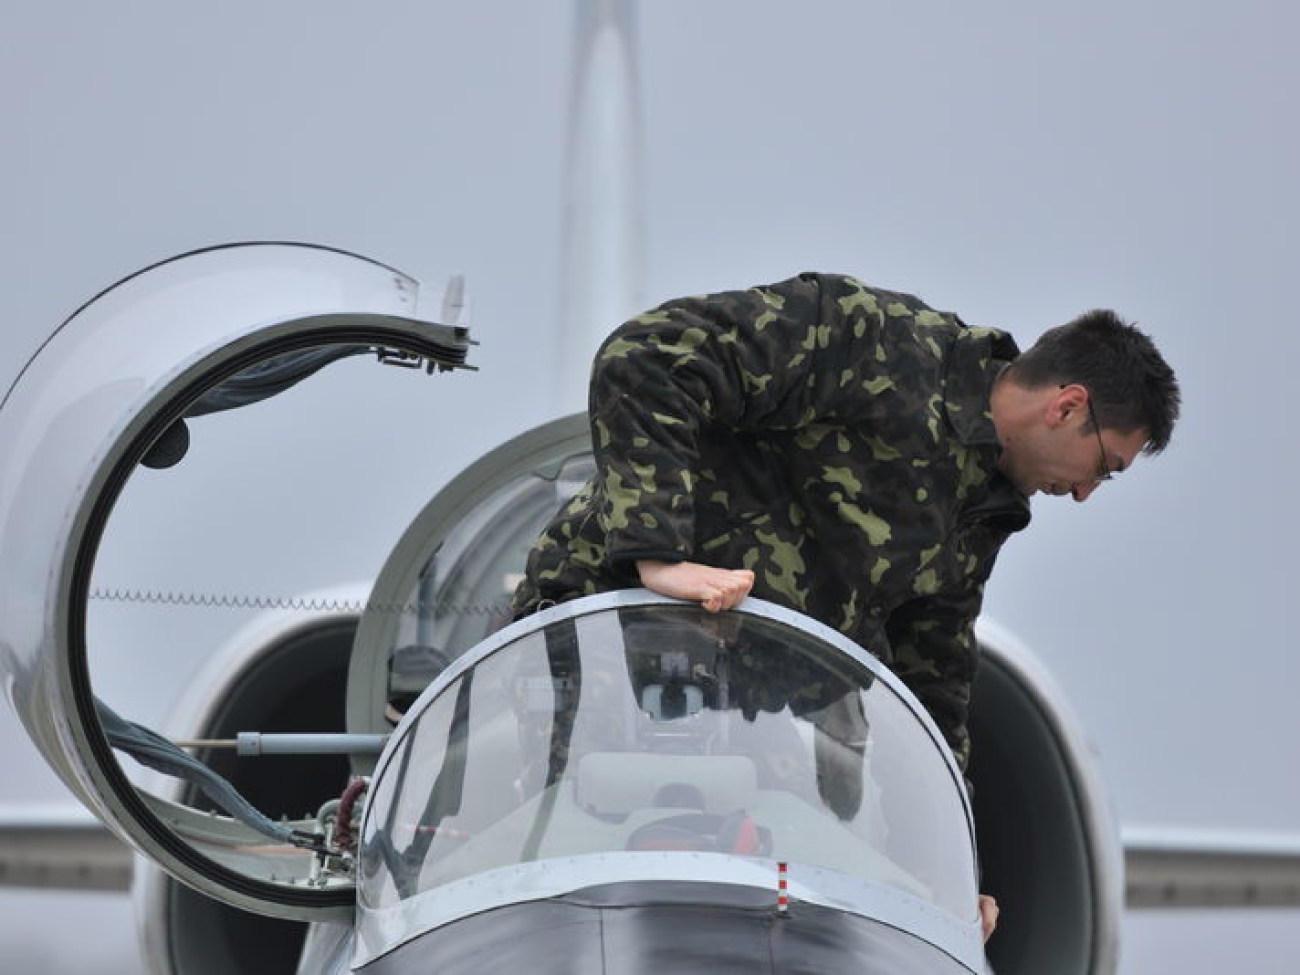 Журналистам показали военную авиацию, 13 ноября 2013г.